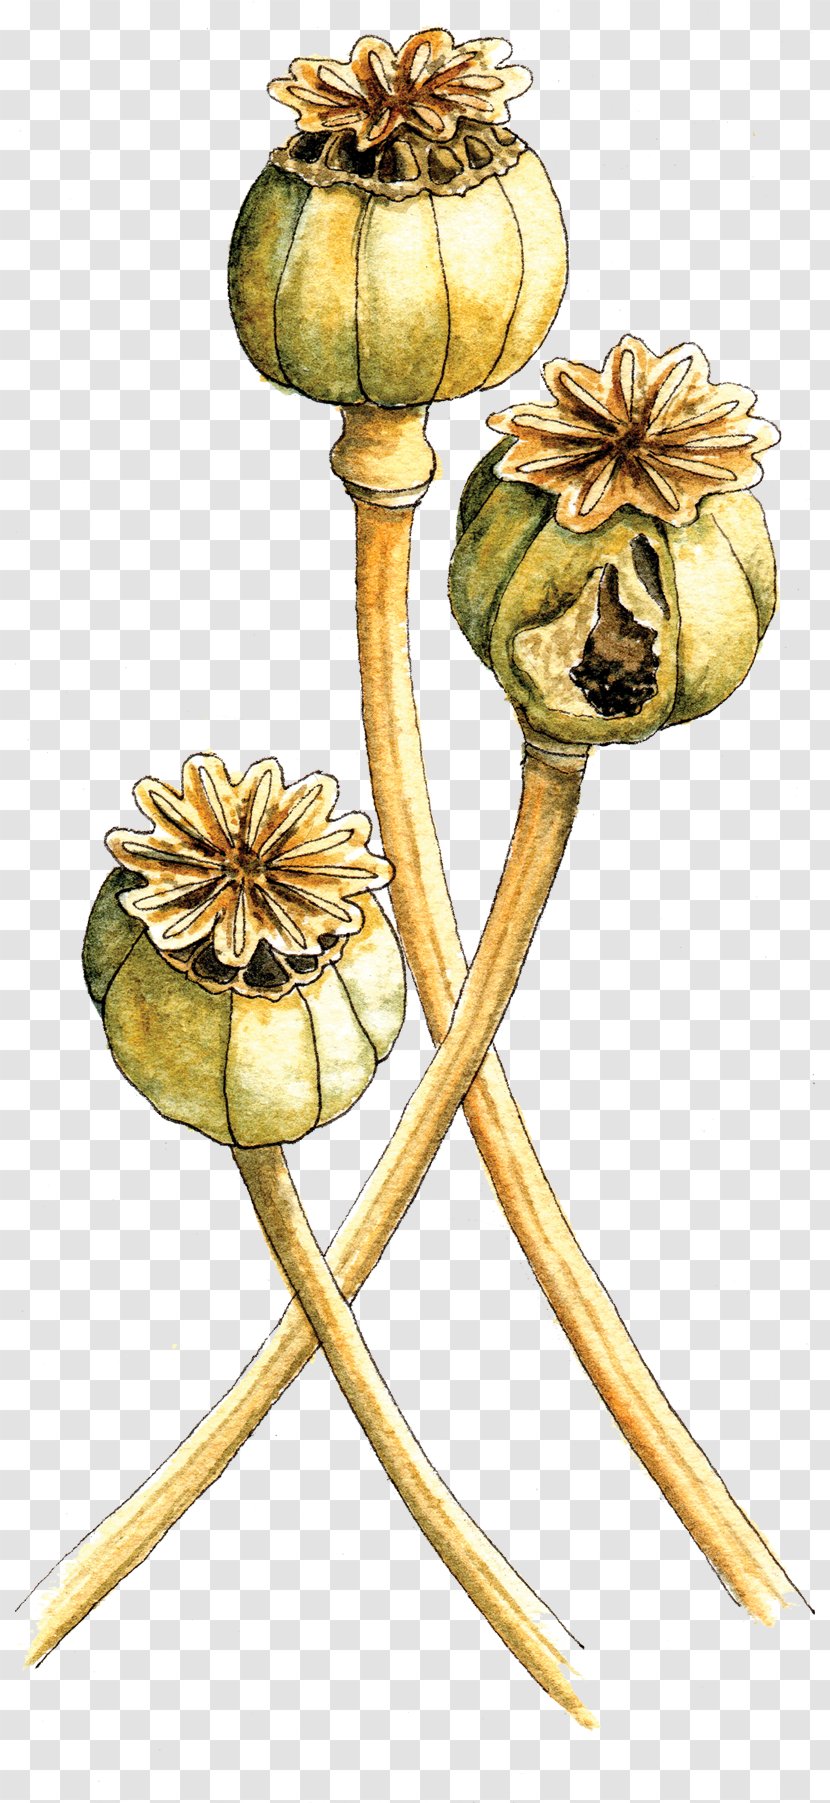 Flowering Plant Stem - Flower Transparent PNG